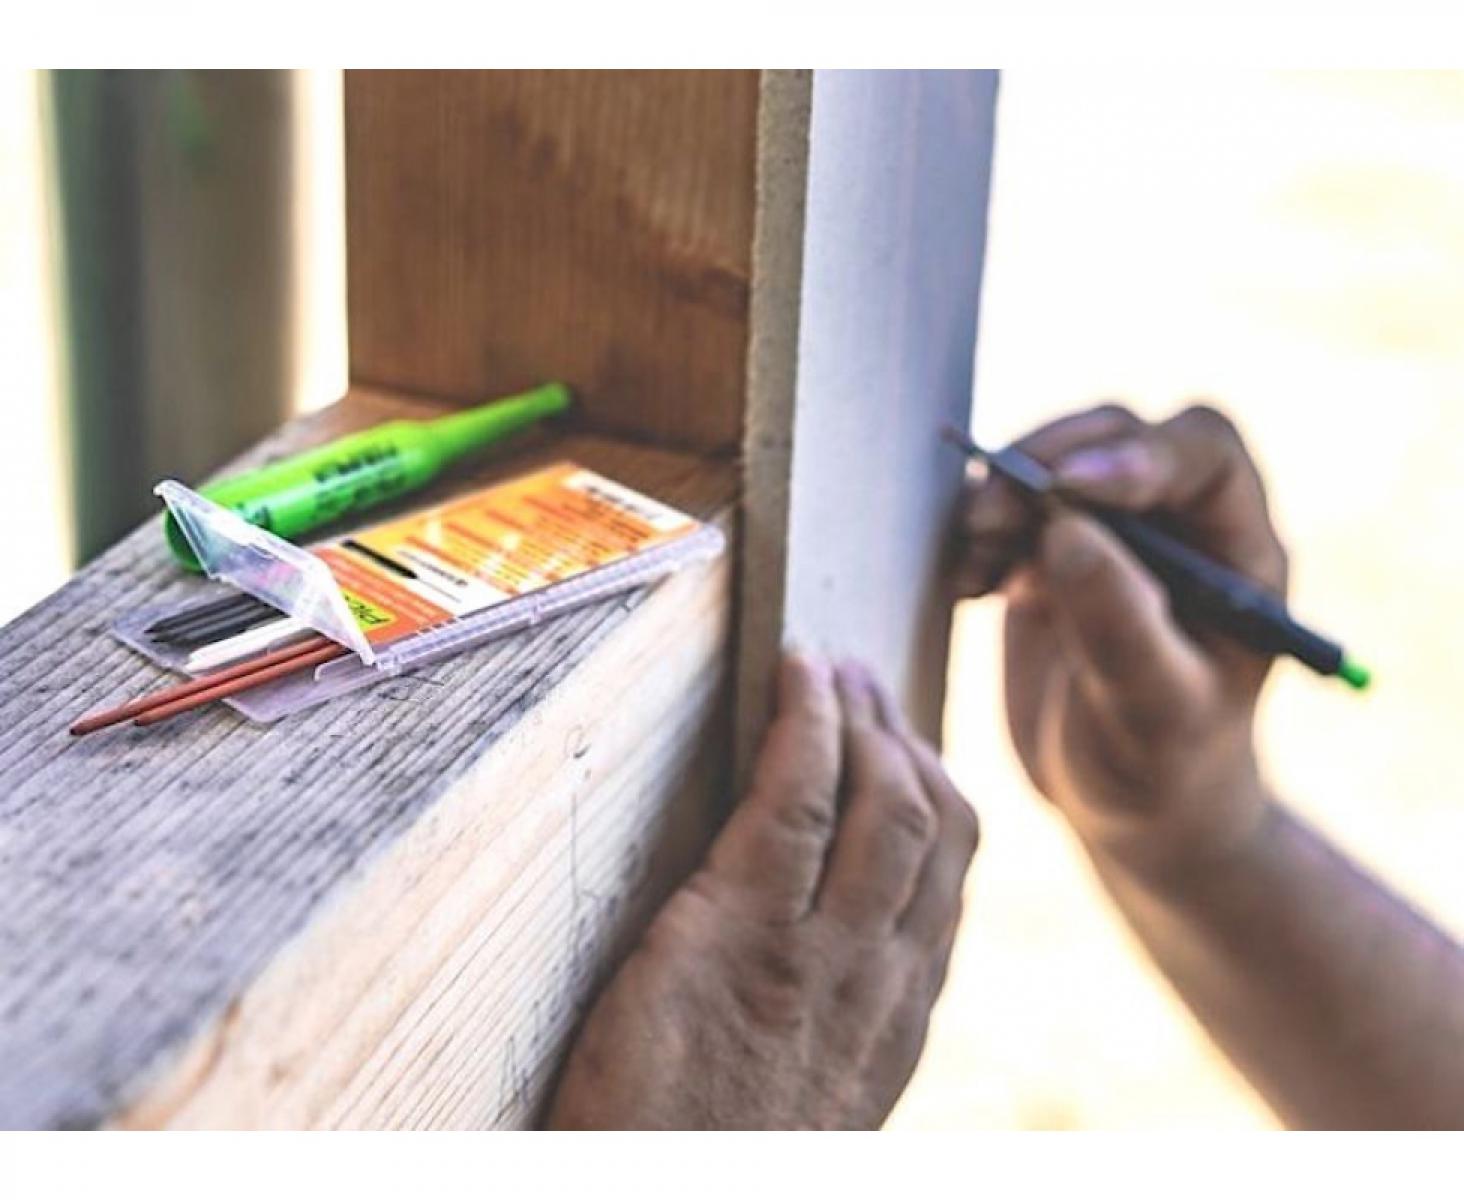 картинка Грифели Summer heat для карандаша Pica-Dry Pica 4070 8 пр. от магазина "Элит-инструмент"